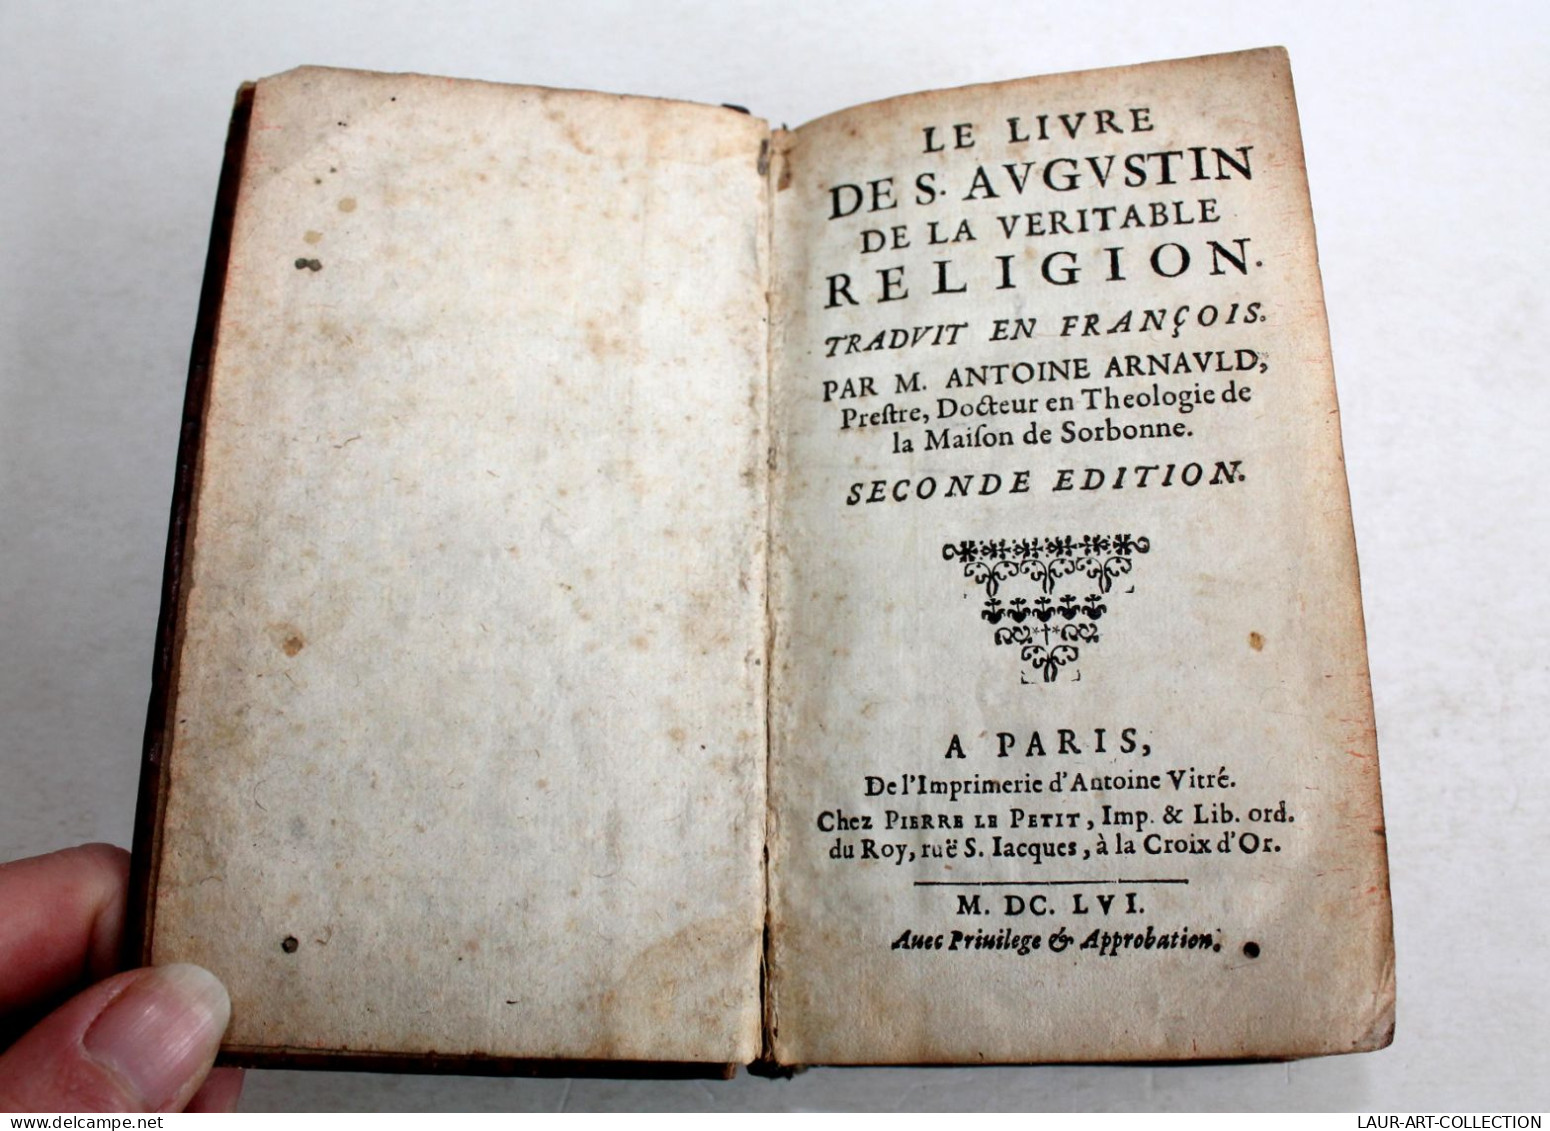 RARE 1656 ! LE LIVRE DES AUGUSTIN DE LA VERITABLE RELIGION Par ANTOINE ARNAULD / LIVRE ANCIEN XVIIe SIECLE (1303.14) - Before 18th Century